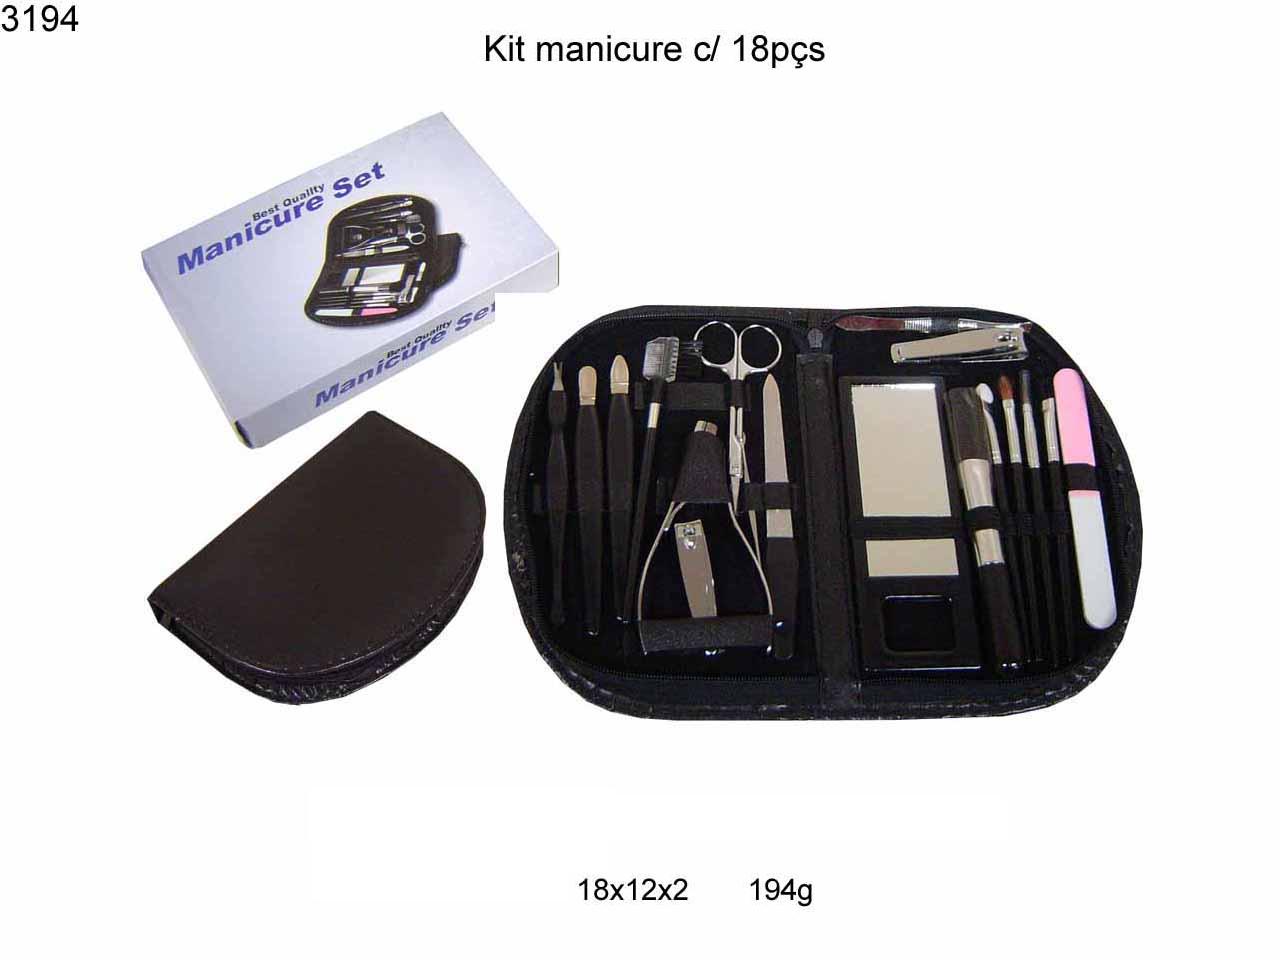 Kit manicure c/ 18  pcs (3194)